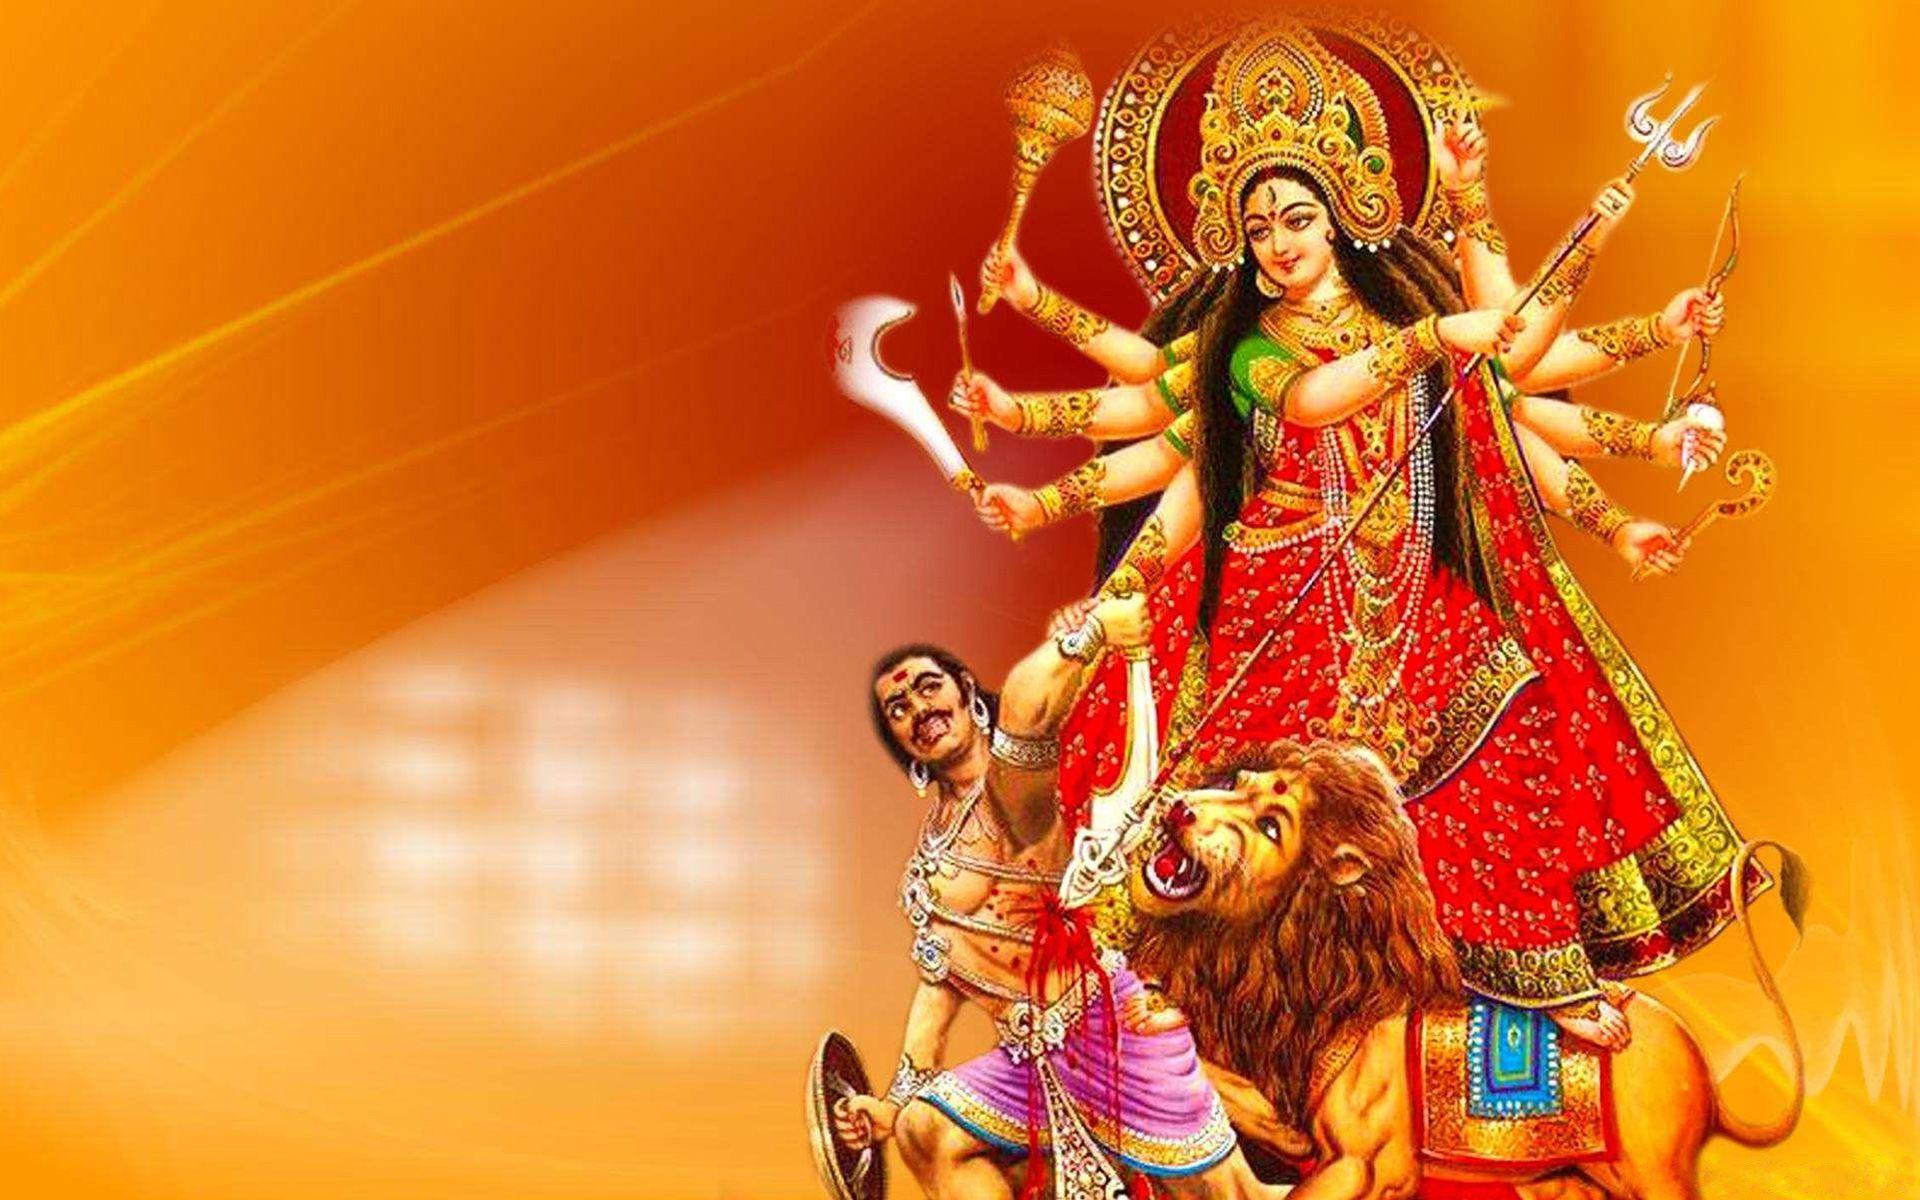 Maa Durga Image Best Image For Desktop HD Wallpaper 1920x1200